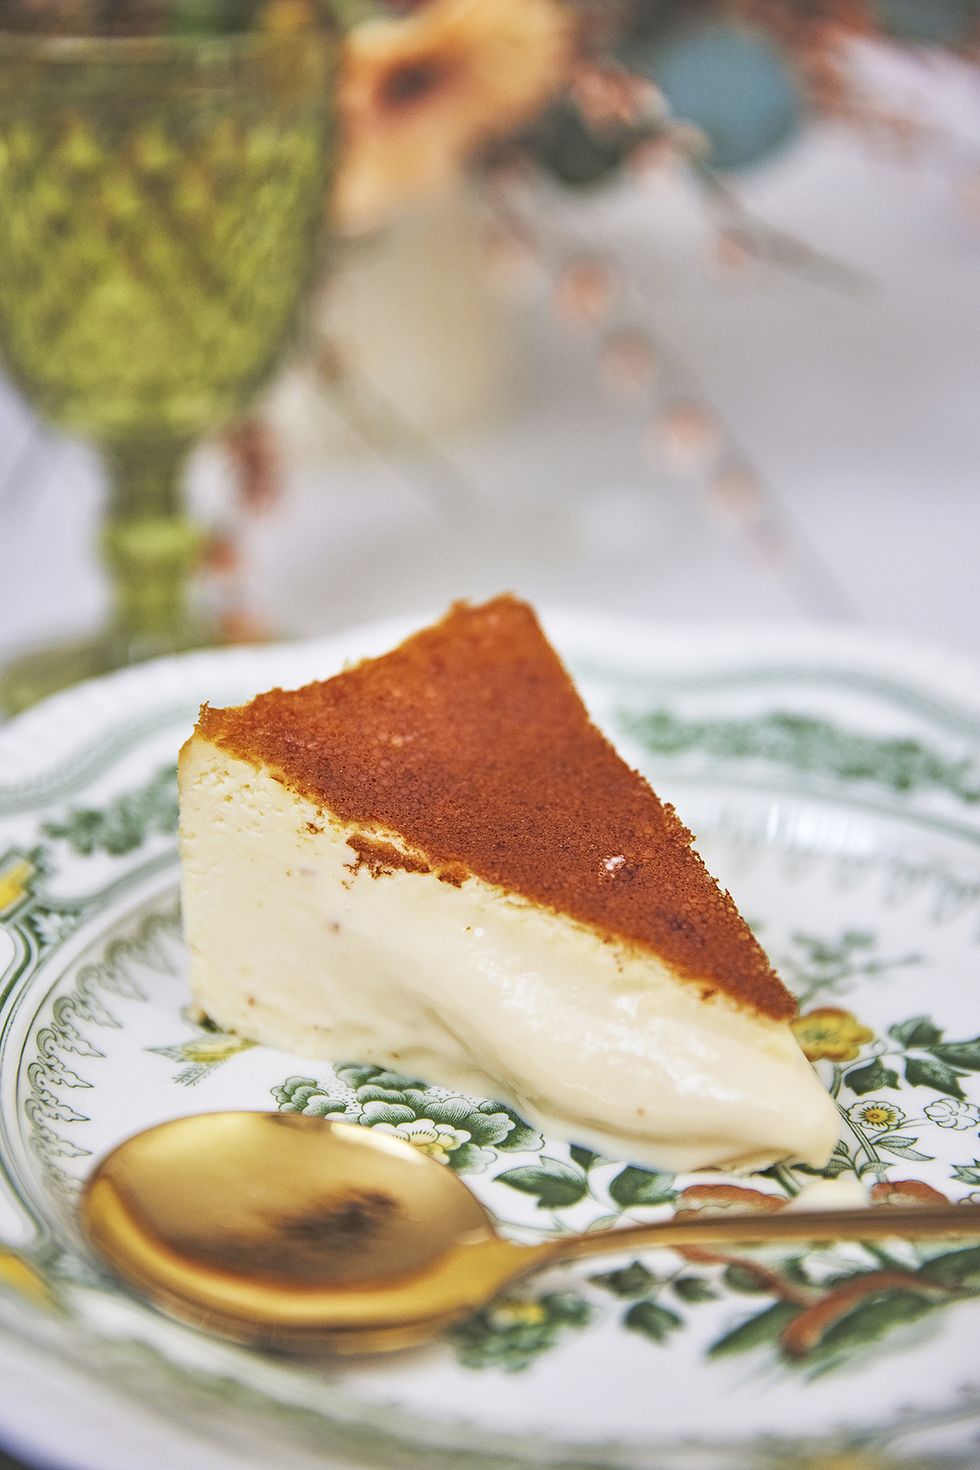 tarta de queso manchego, postre de la cocinera maría morales para su restaurante esencia en tomelloso